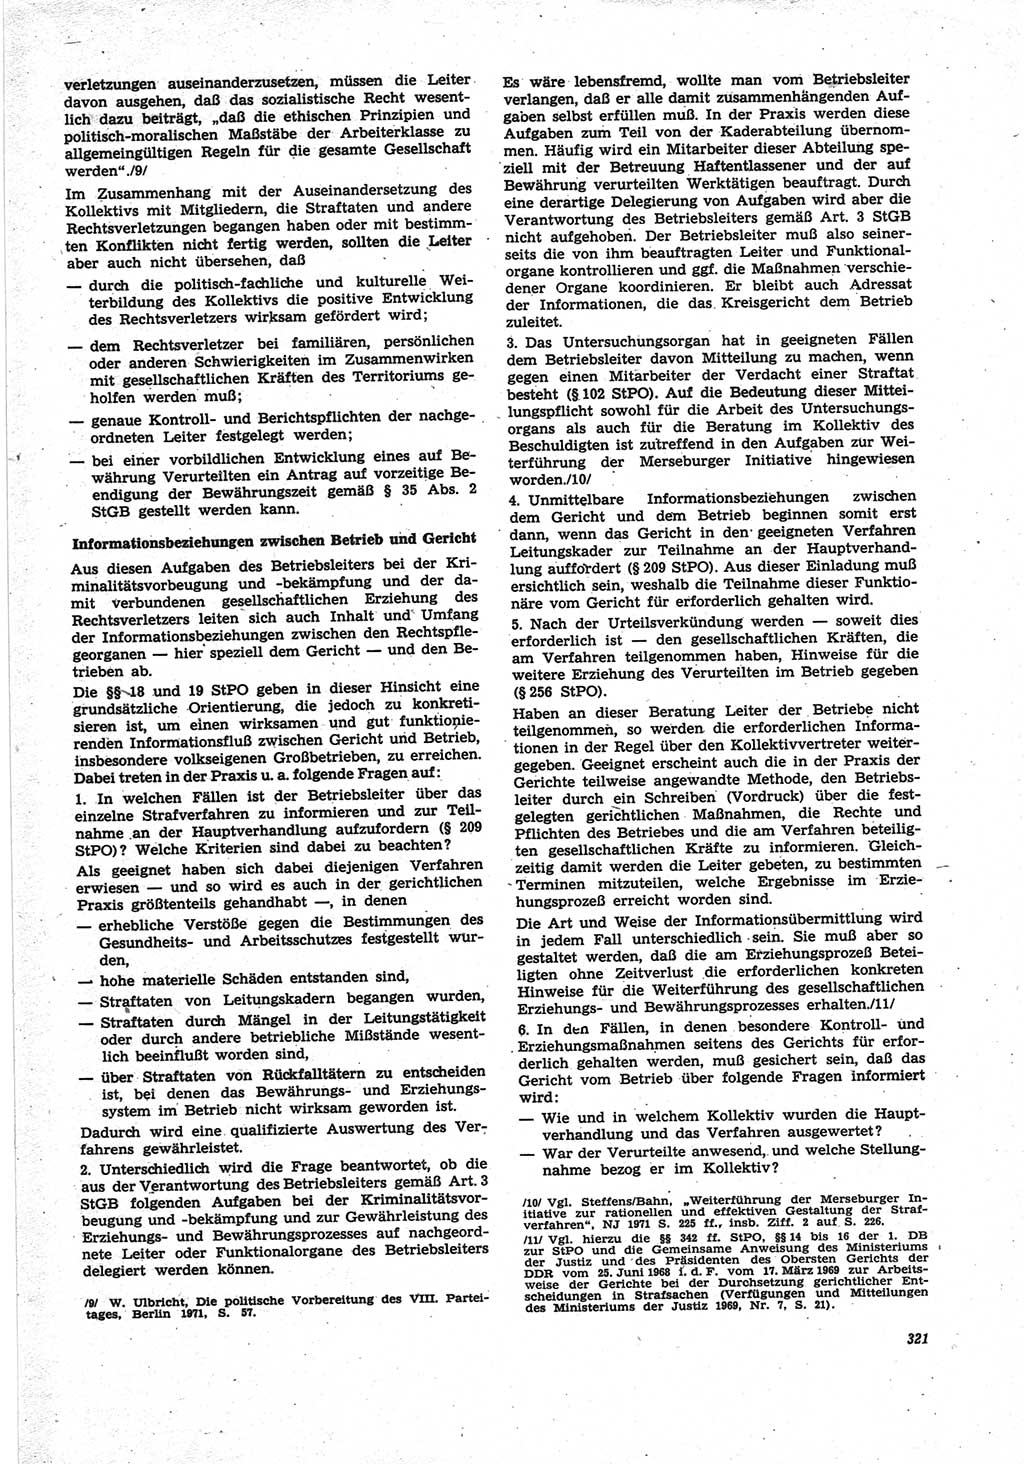 Neue Justiz (NJ), Zeitschrift für Recht und Rechtswissenschaft [Deutsche Demokratische Republik (DDR)], 25. Jahrgang 1971, Seite 321 (NJ DDR 1971, S. 321)